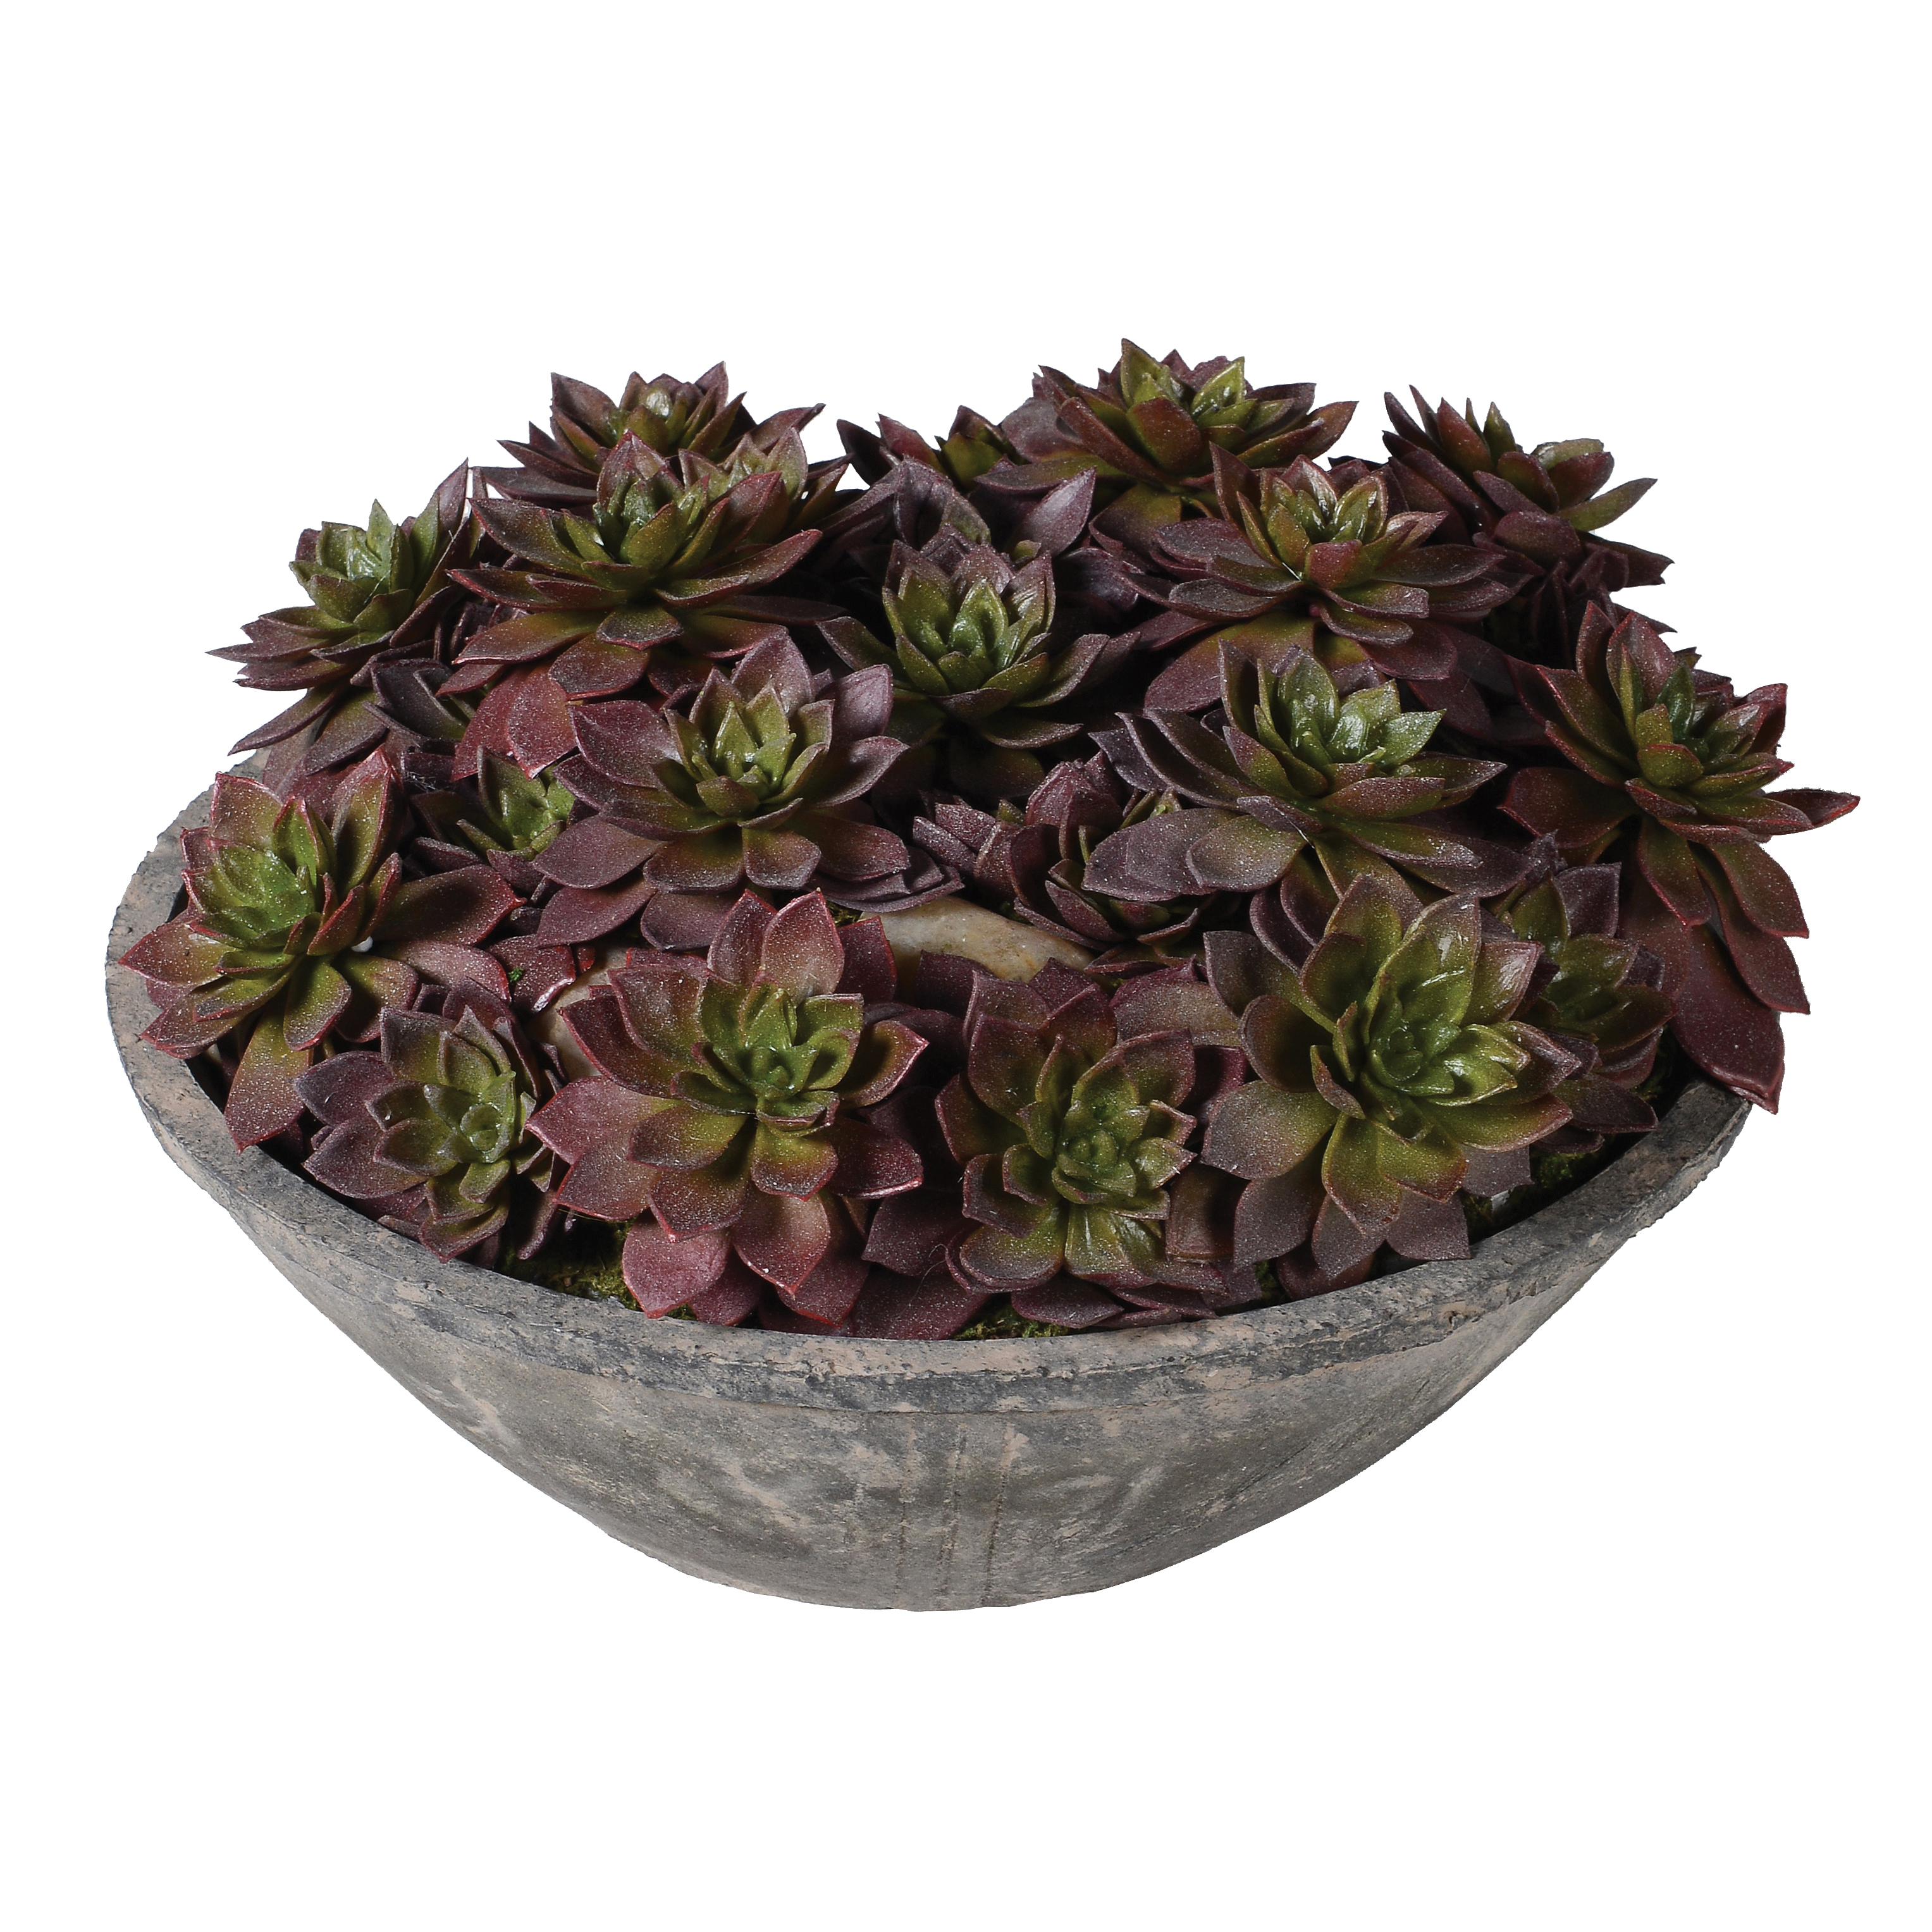 Echeveria Plant In Bowl